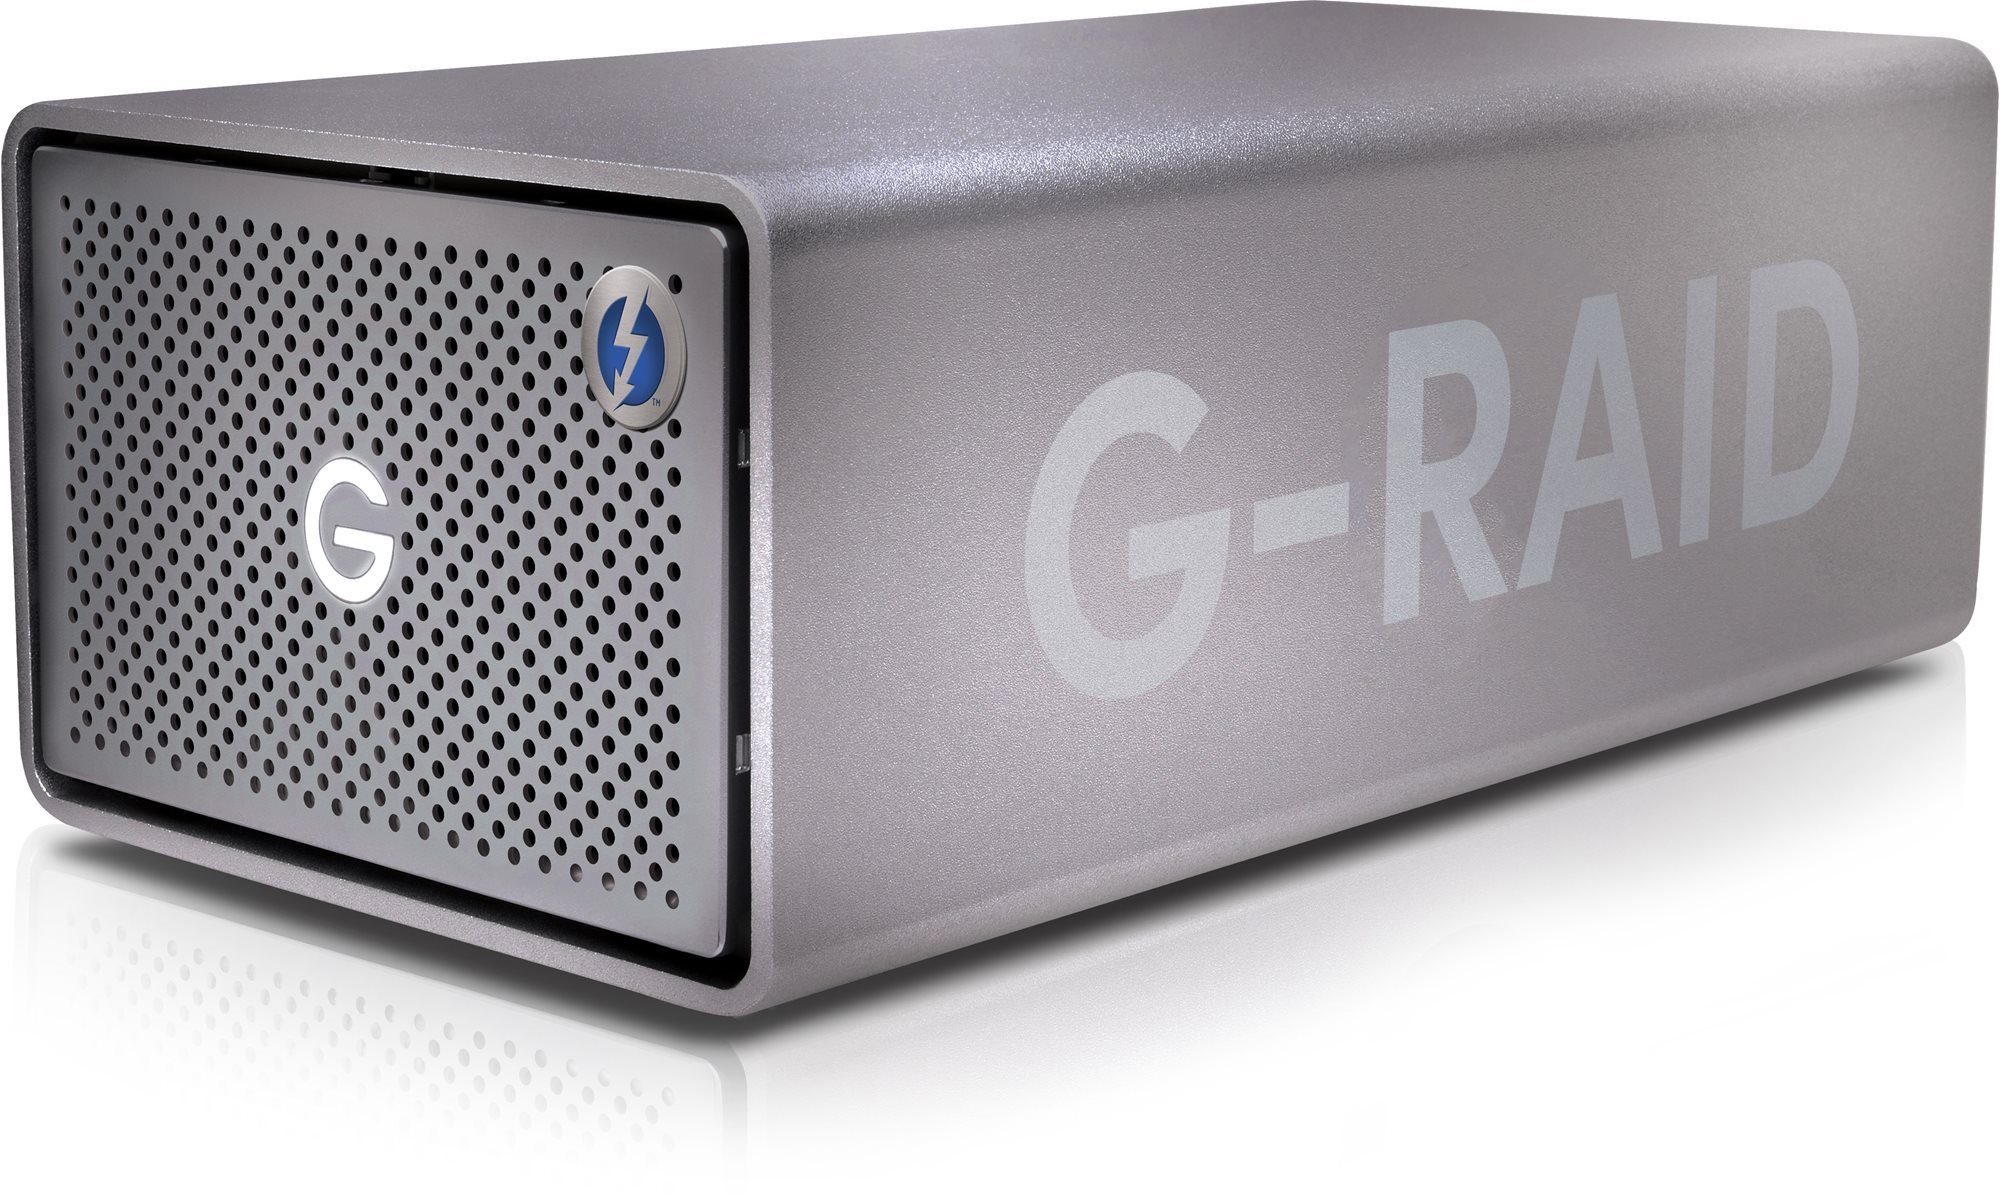 Külső merevlemez SanDisk Professional G-RAID 2 40TB